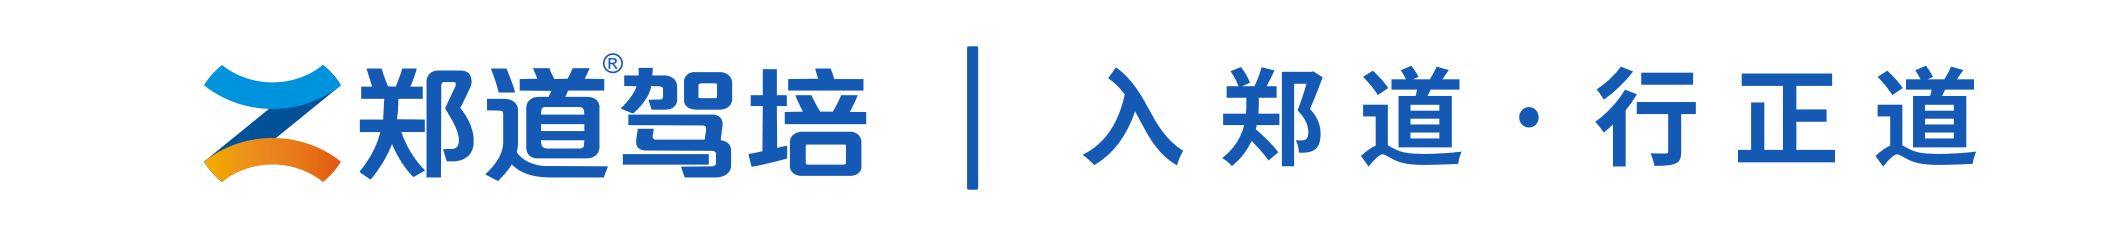 郑道驾培官网logo图